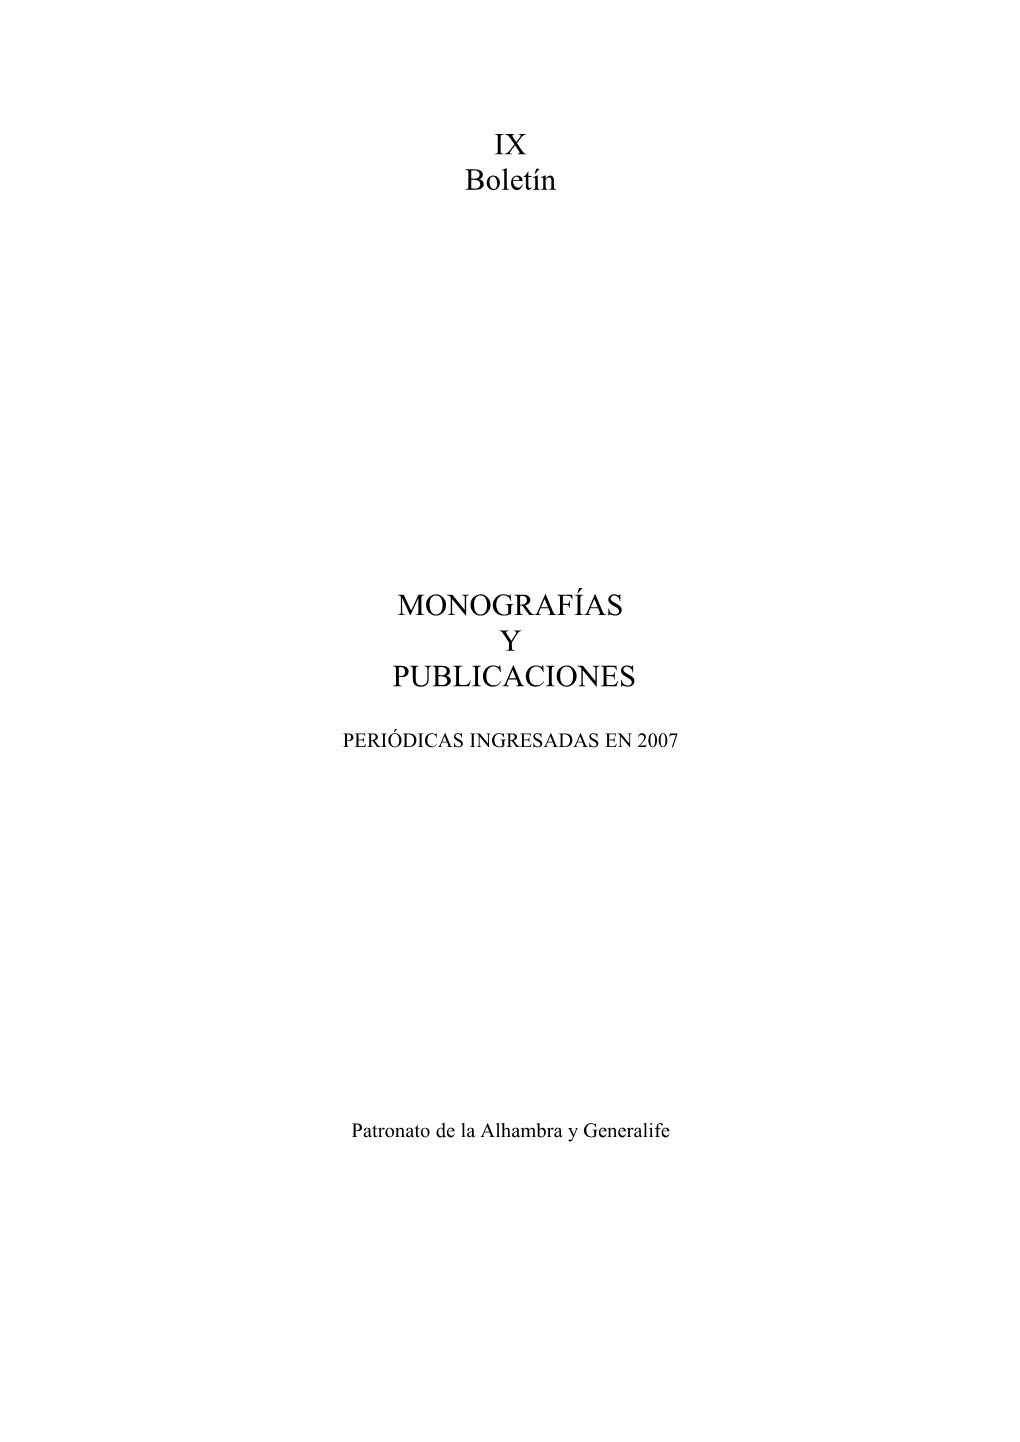 IX Boletín MONOGRAFÍAS Y PUBLICACIONES